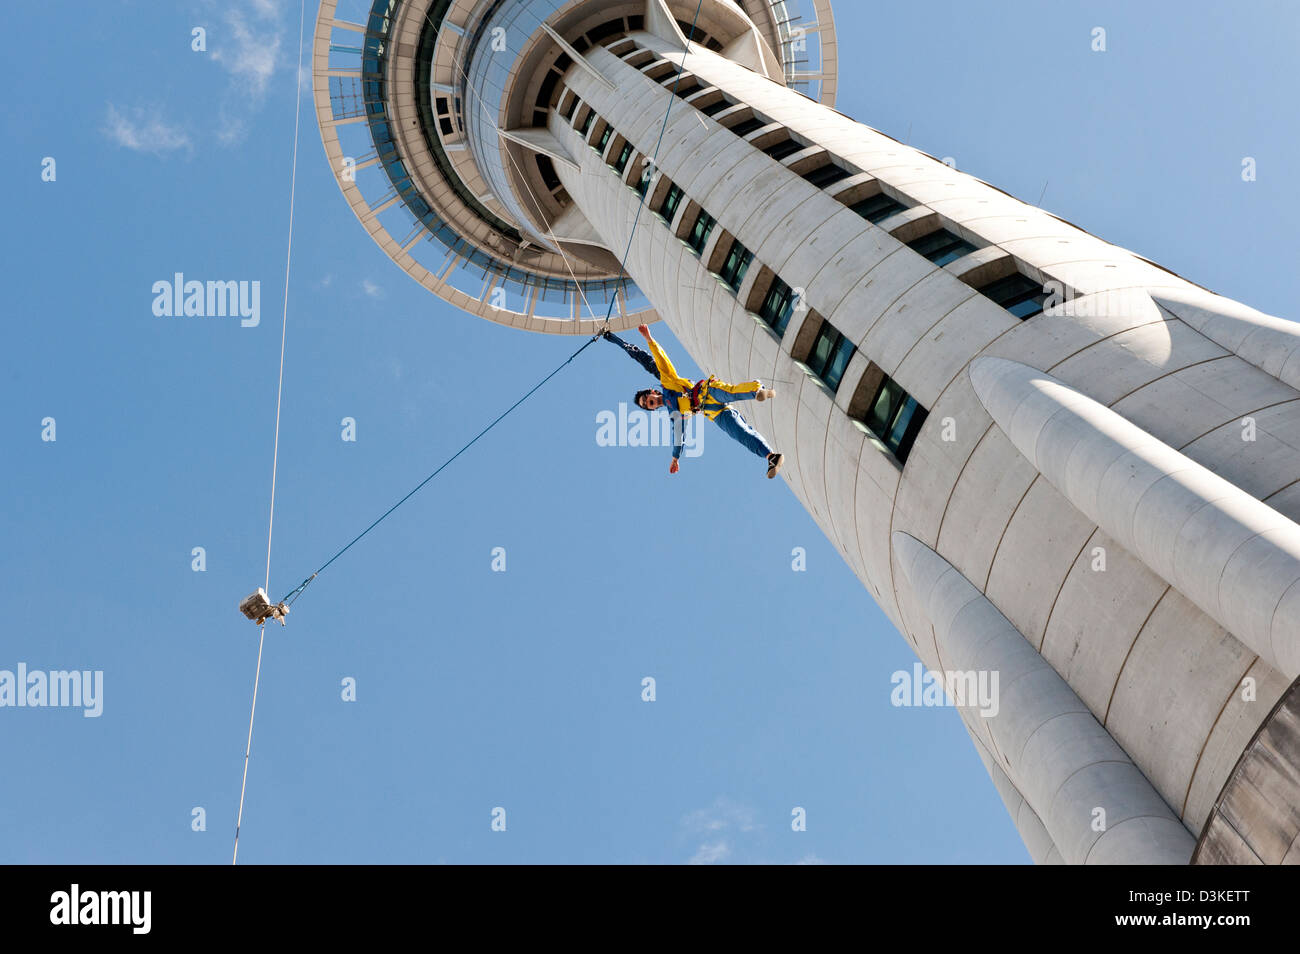 Weibliche Basejumpen Tower in Neuseeland Abenteuer Sport Sky jump bungy Stil New Zealand Jumper Abspringen Draht bauen Stockfoto